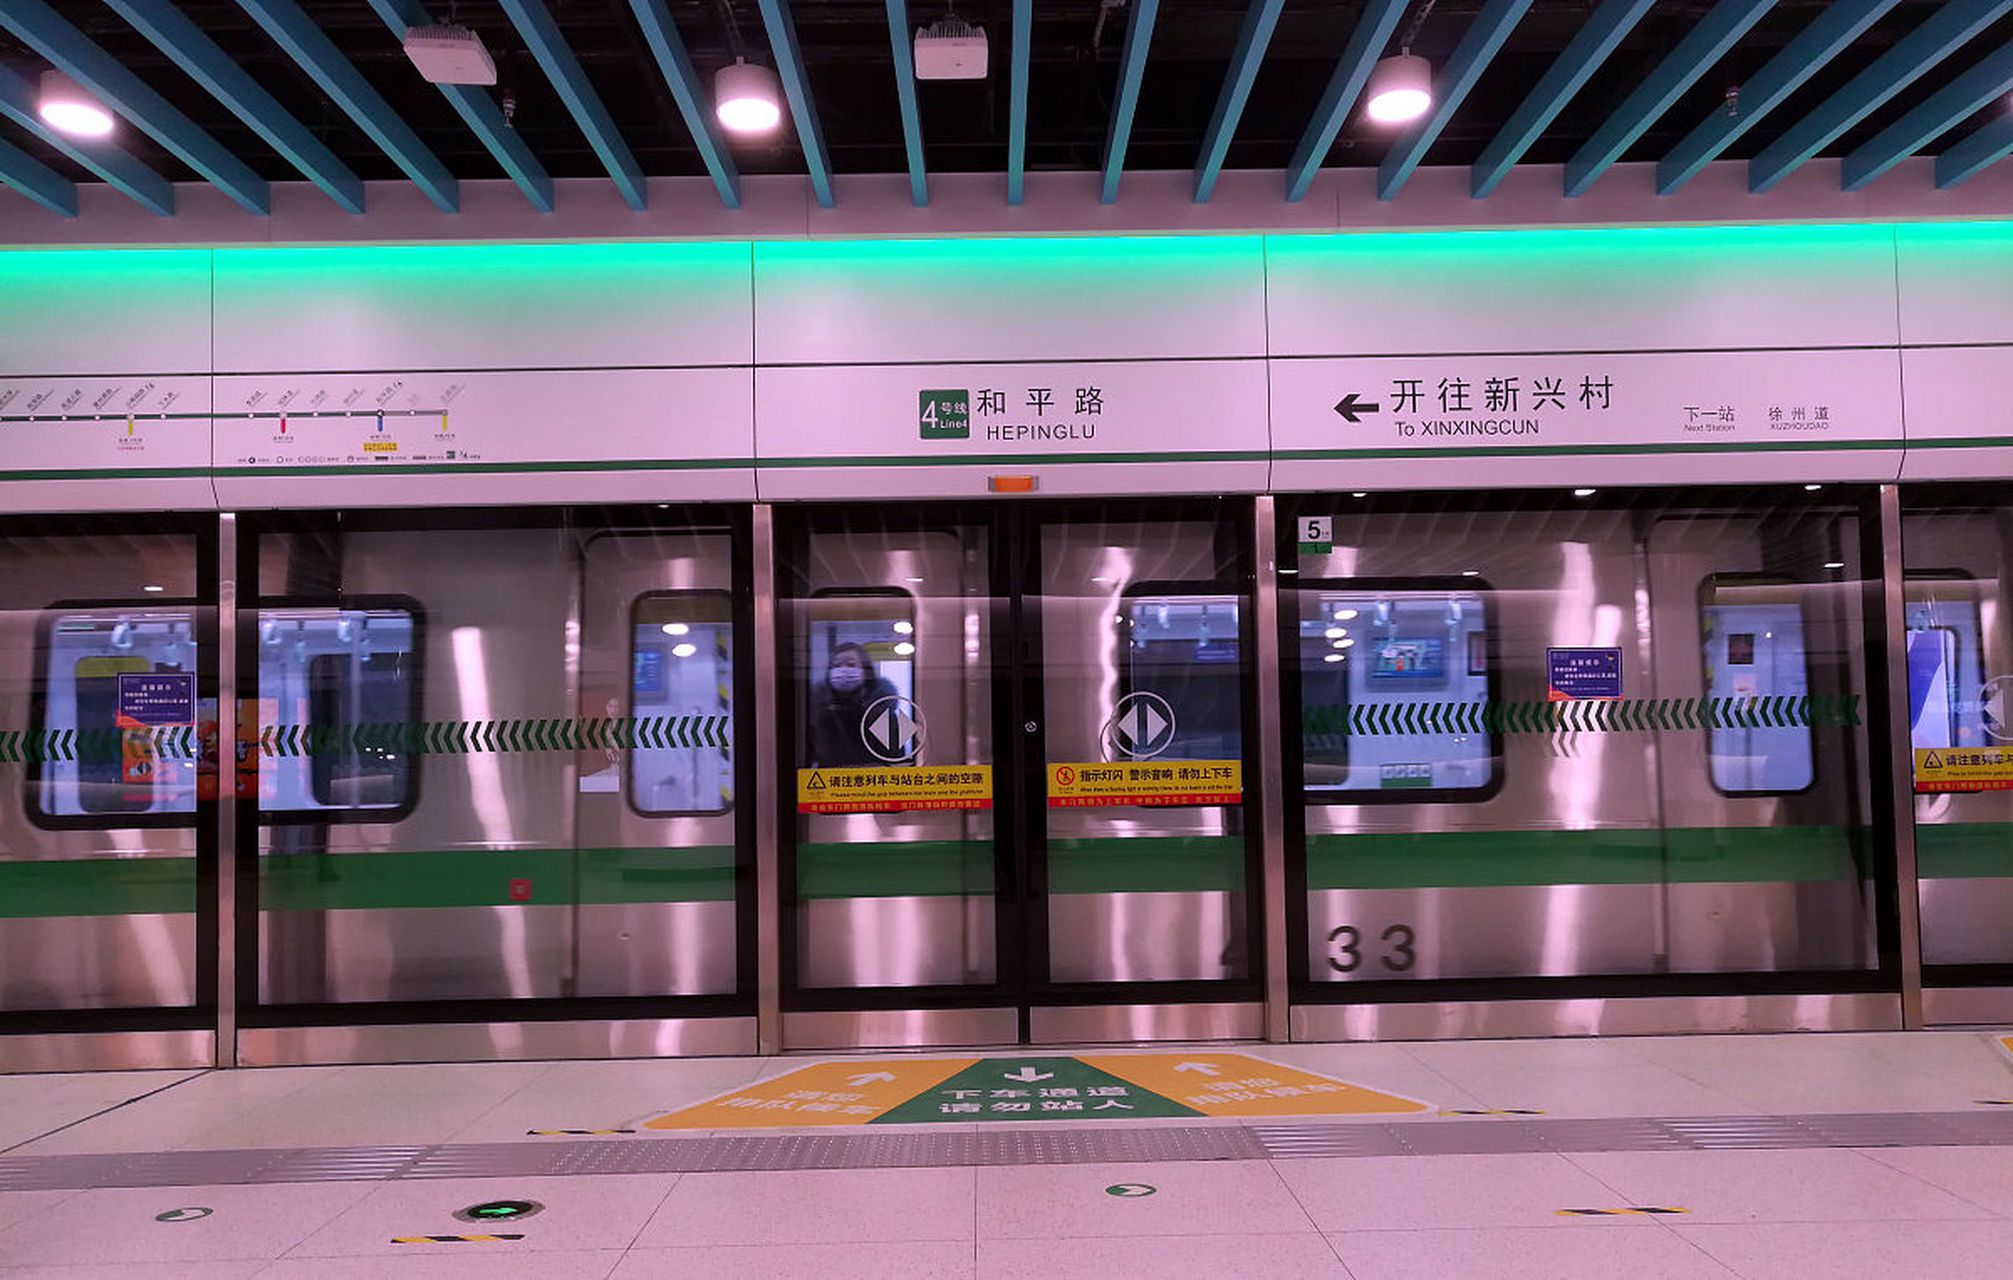 【4号线万东路站将新开一个出入口】日前,天津地铁4号线万东路站d2出